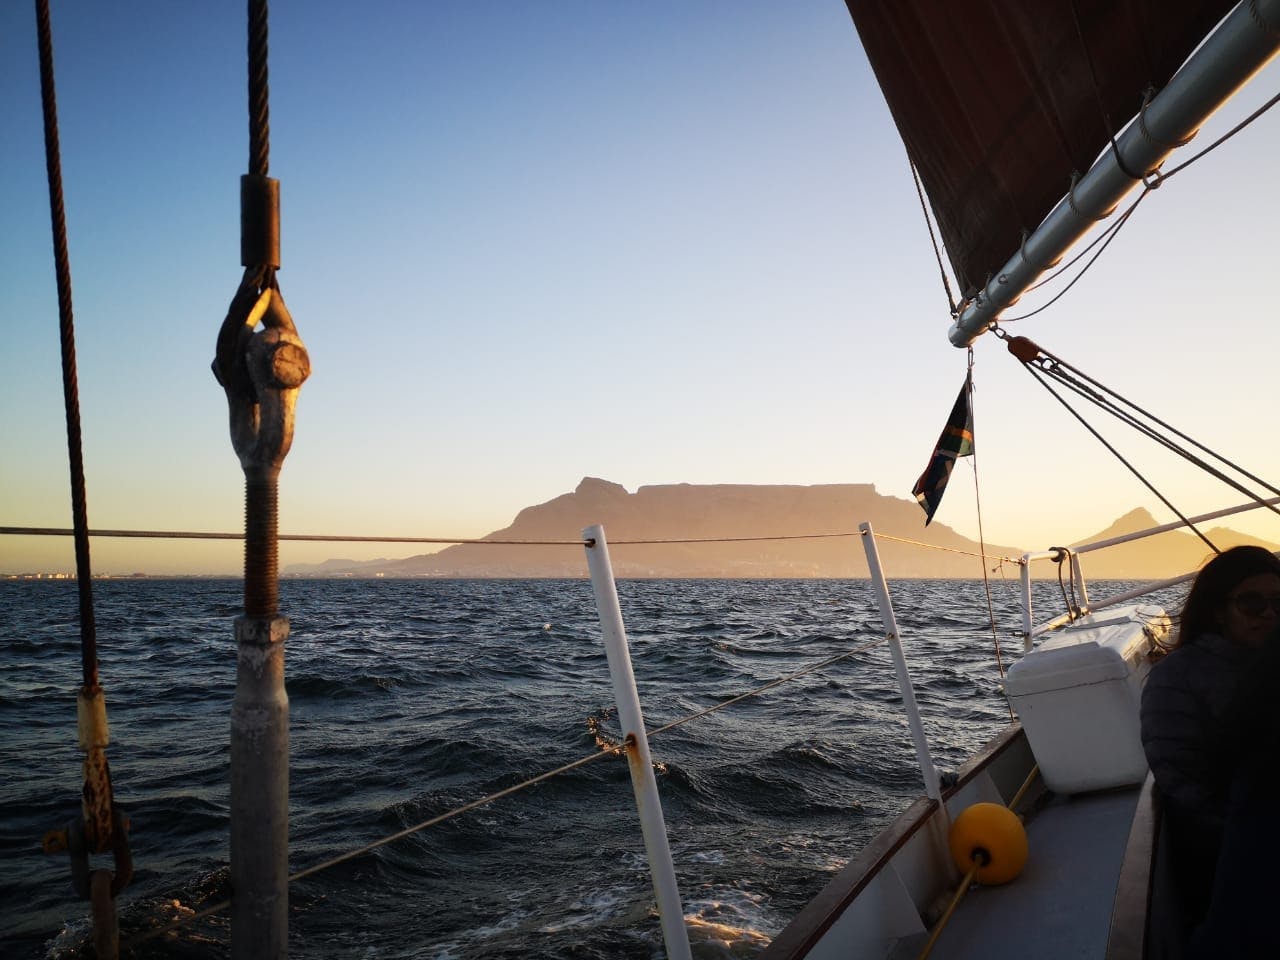 90 minuten durende zeiltocht bij zonsondergang in Kaapstad